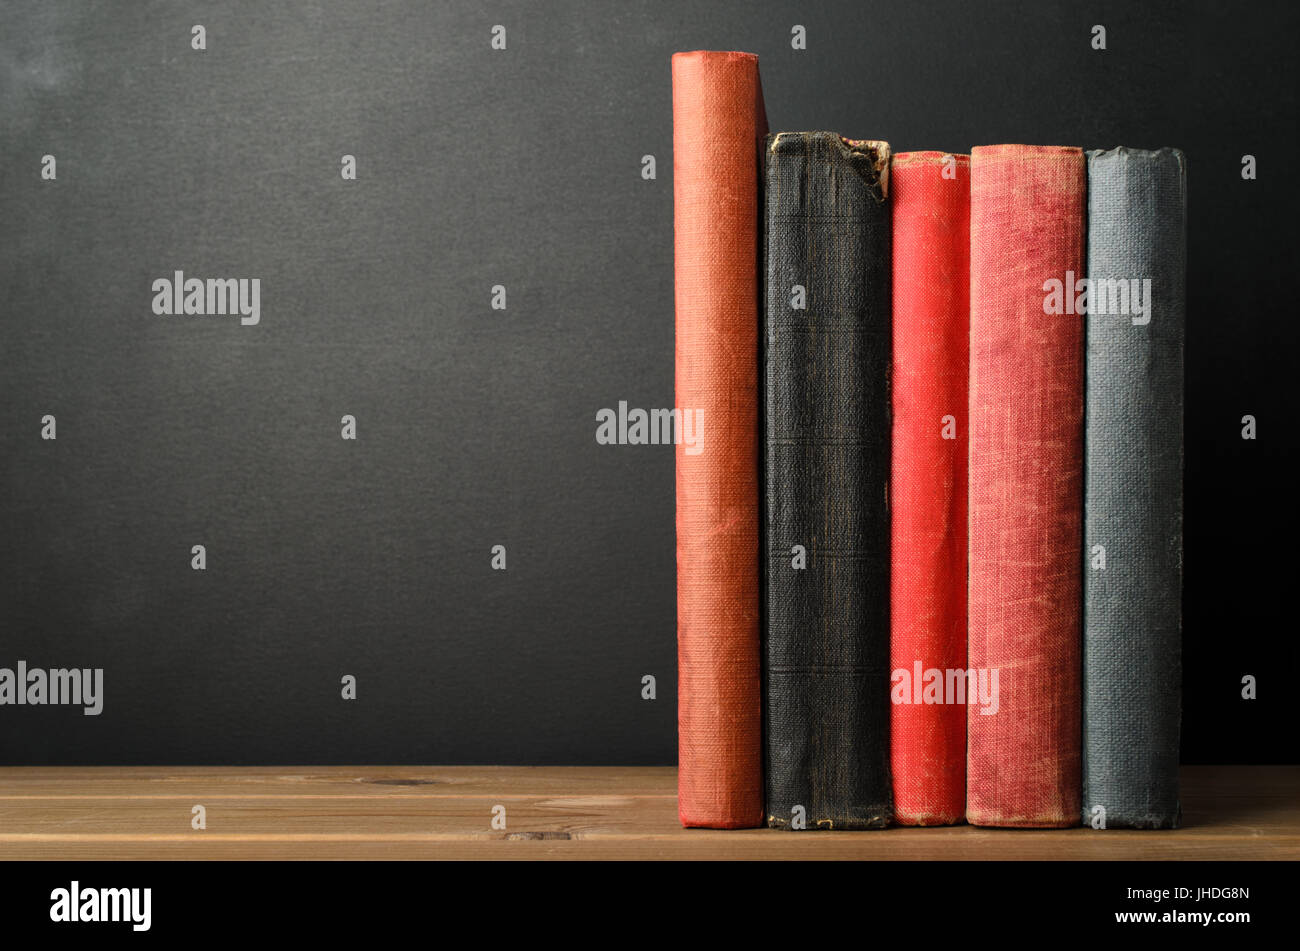 Eine Reihe von aufrechten Bücher mit leeren Stacheln auf Augenhöhe auf Holz beplankt Schreibtisch mit schwarzen Tafel Hintergrund; Bereitstellung von textfreiraum nach links. Stockfoto